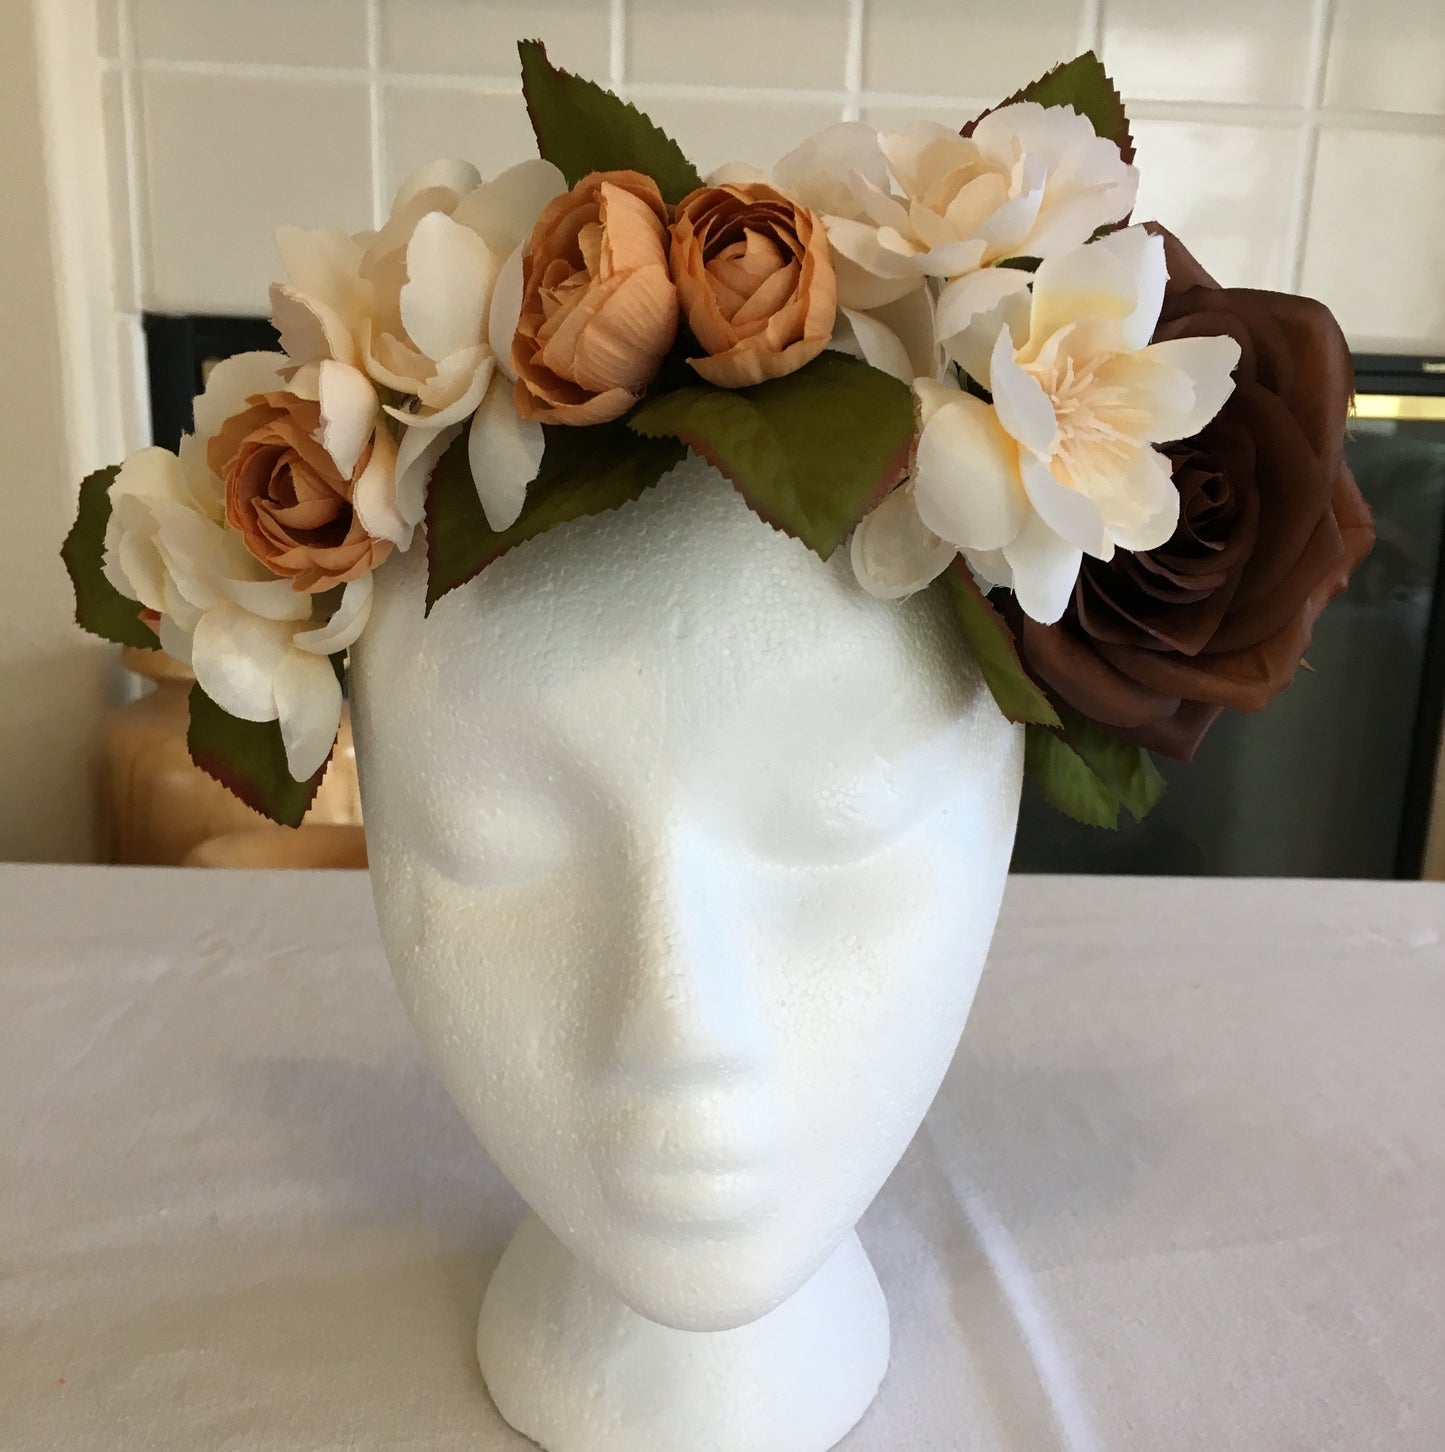 Medium Wreath - Brown rose w/ beige accents